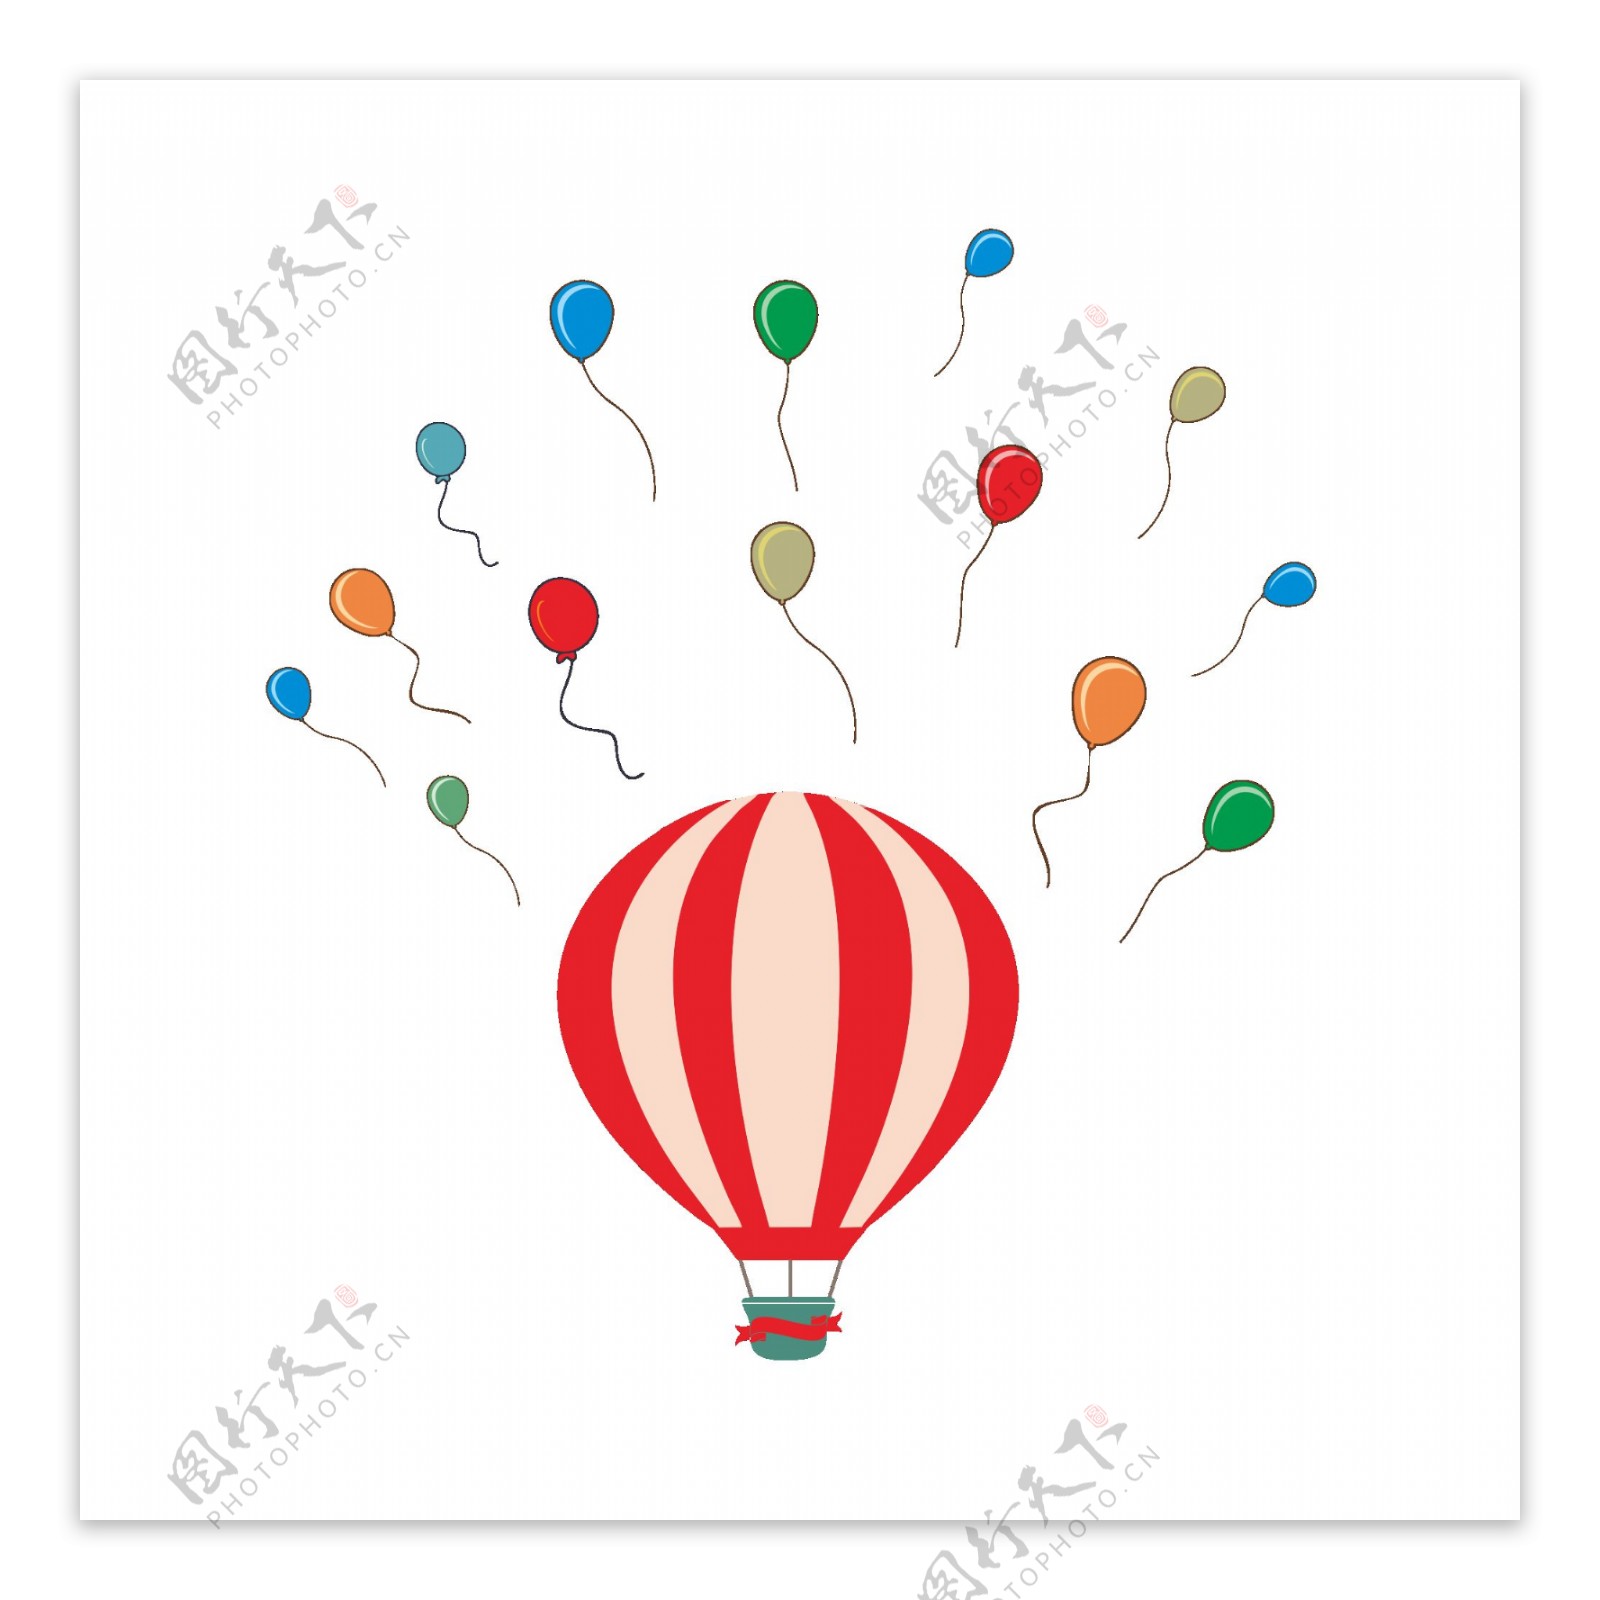 漂浮气球热气球彩色矢量可商用素材